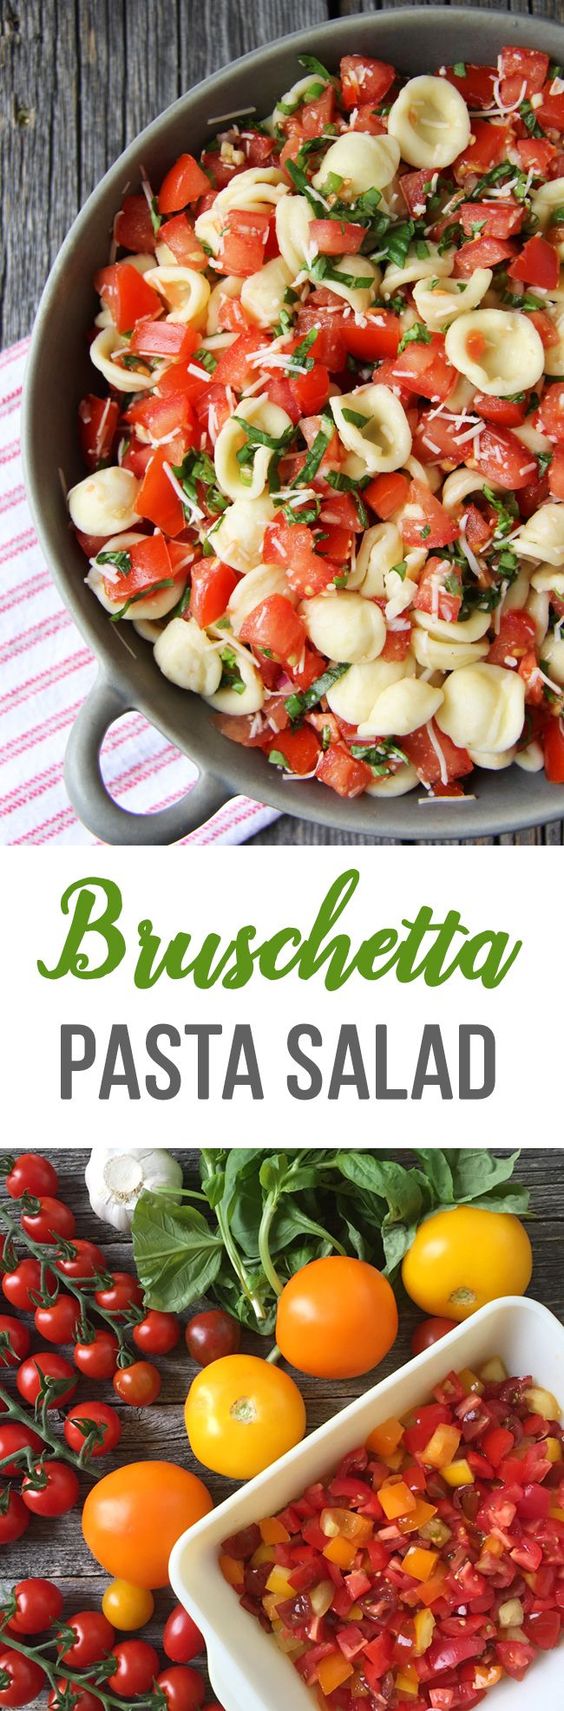 Bruschetta-Pasta-Salad